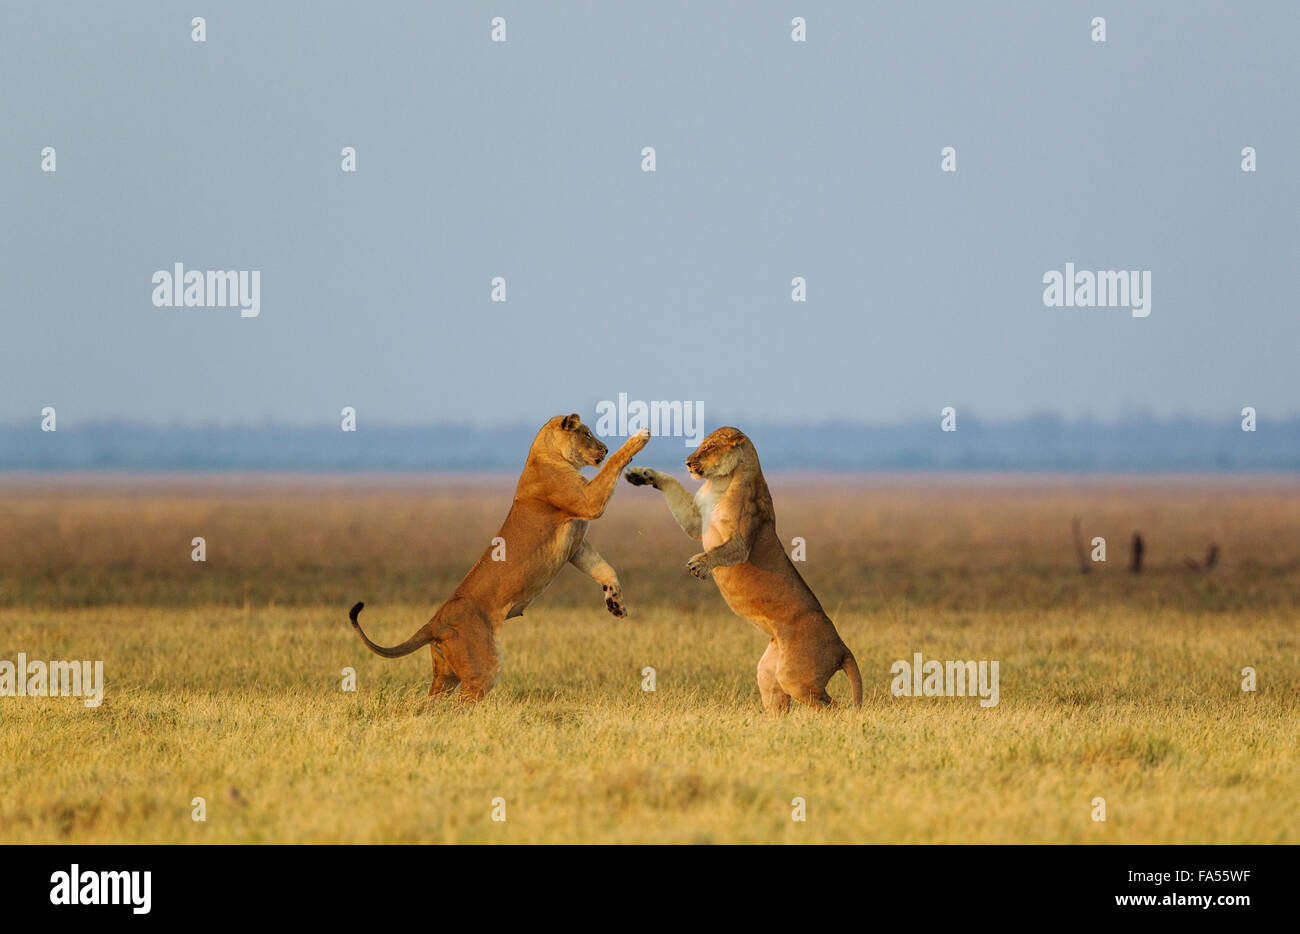 Lions (Panthera leo), two lionesses, playing at dawn, Savuti, Chobe National Park, Botswana Stock Photo